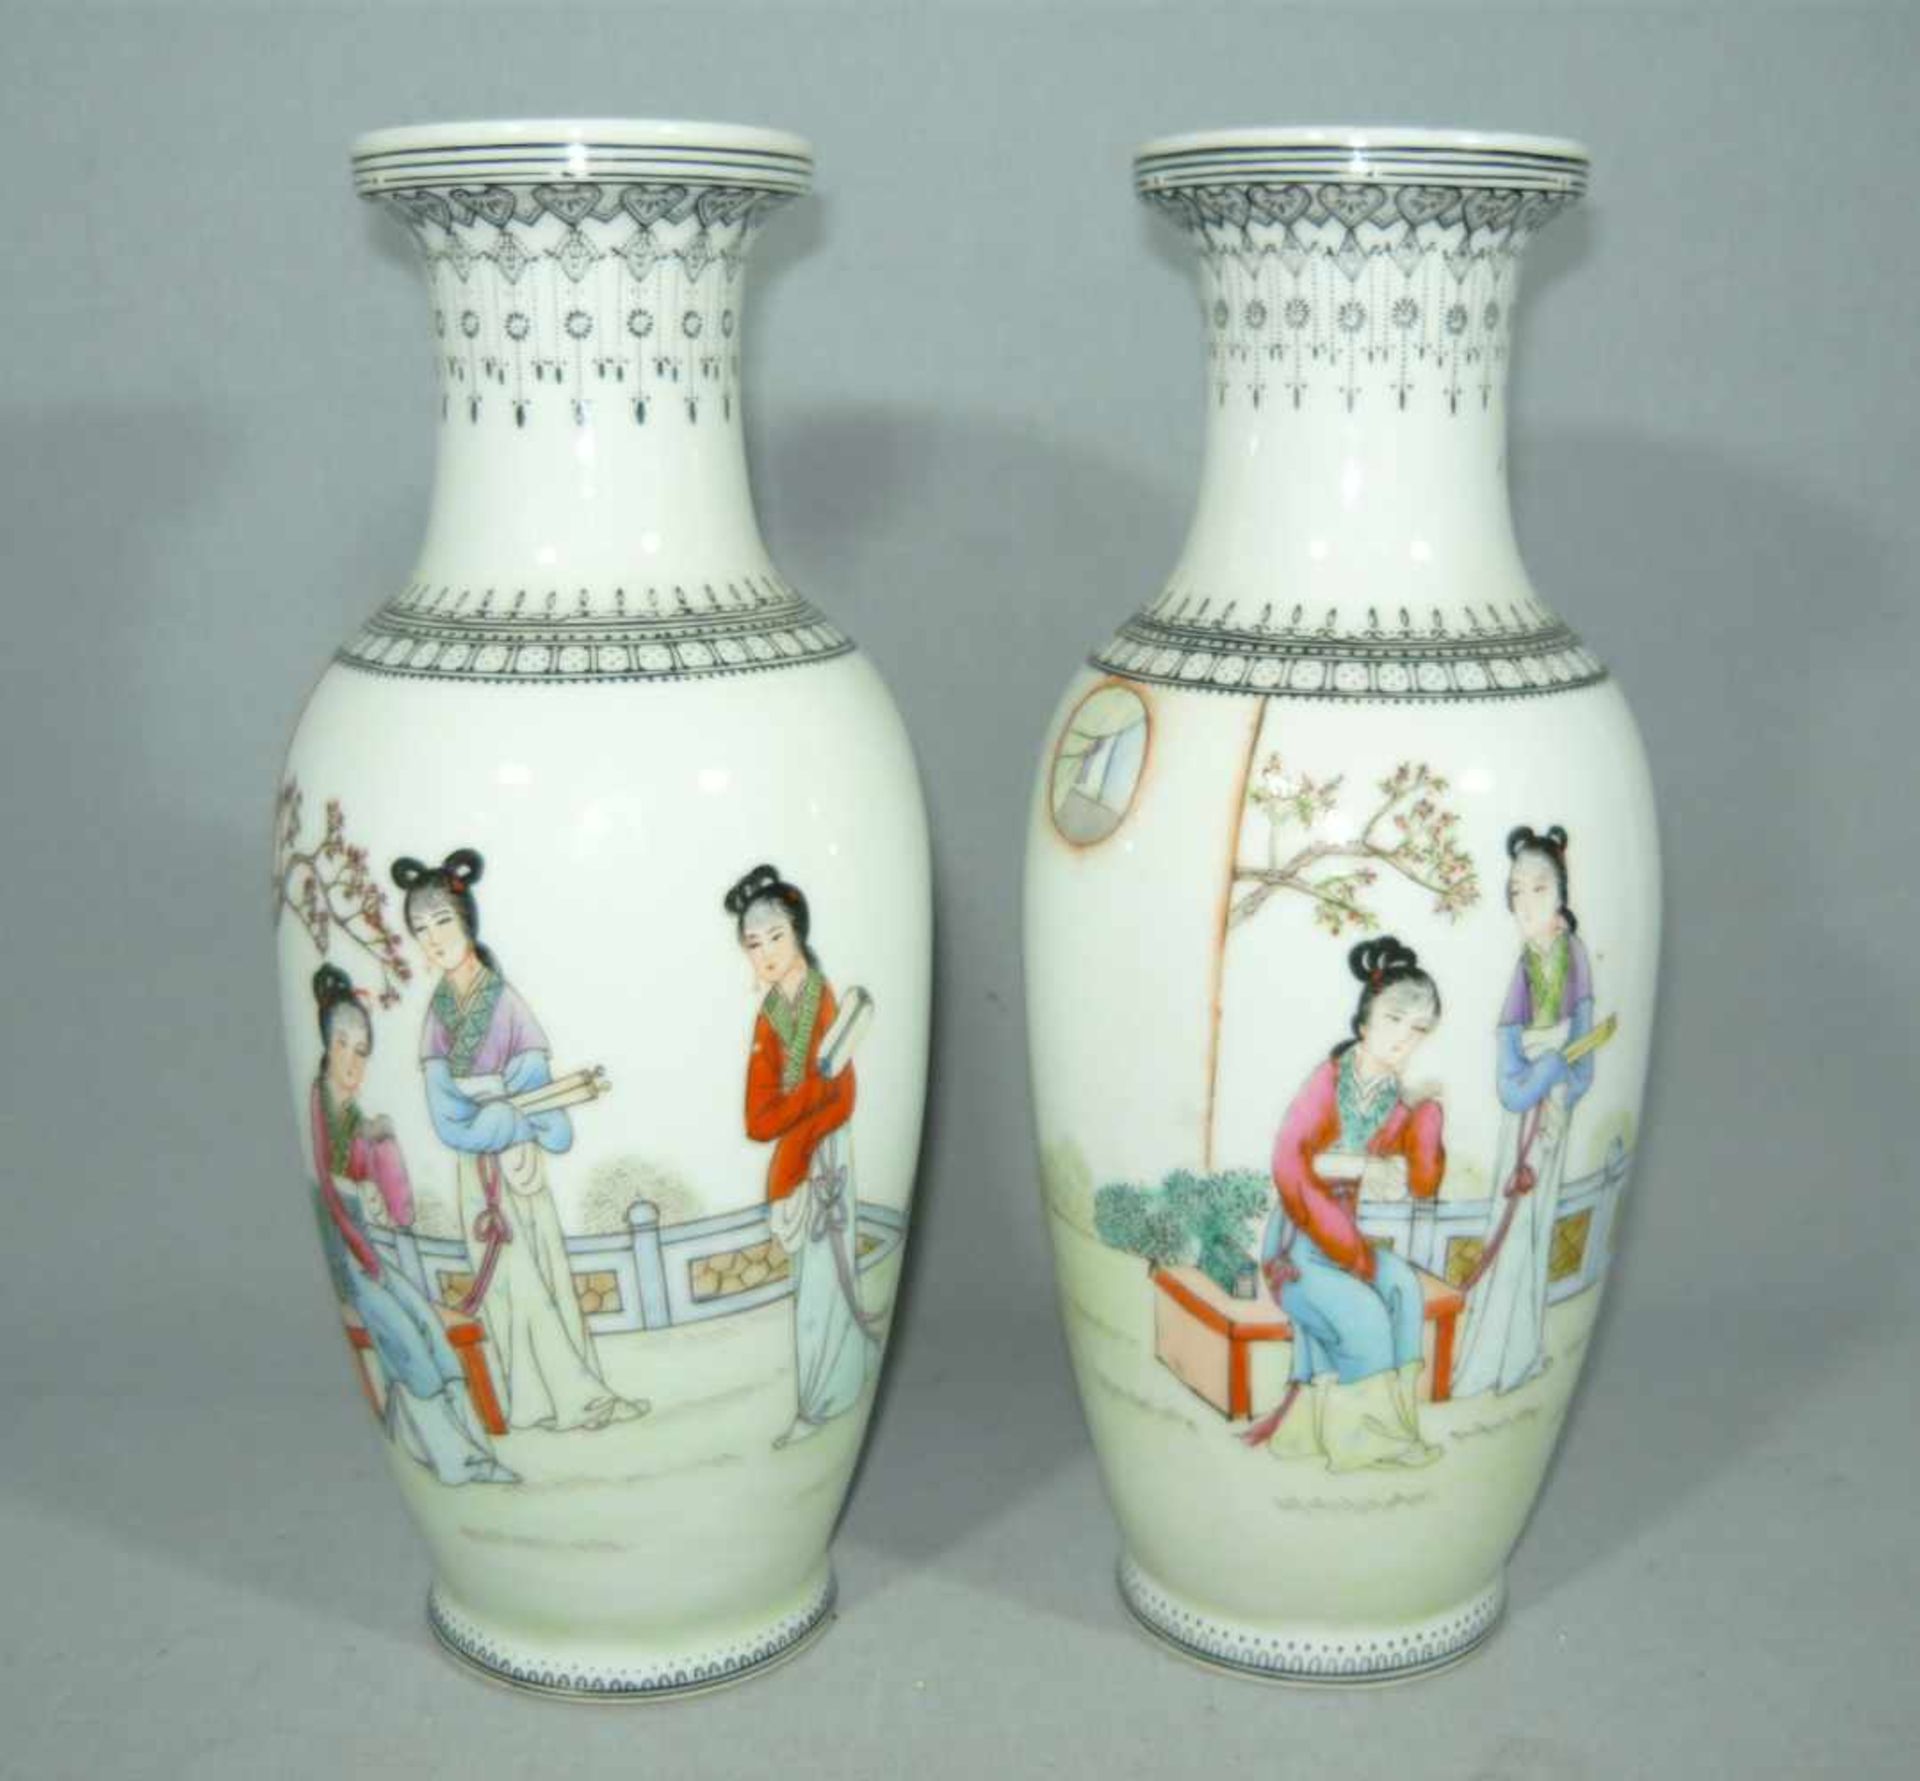 Paar chinesische Vasen. Wohl um 1880. H. je ca. 26 cm.Pair chinese vases. Prob. around 1880. H. each